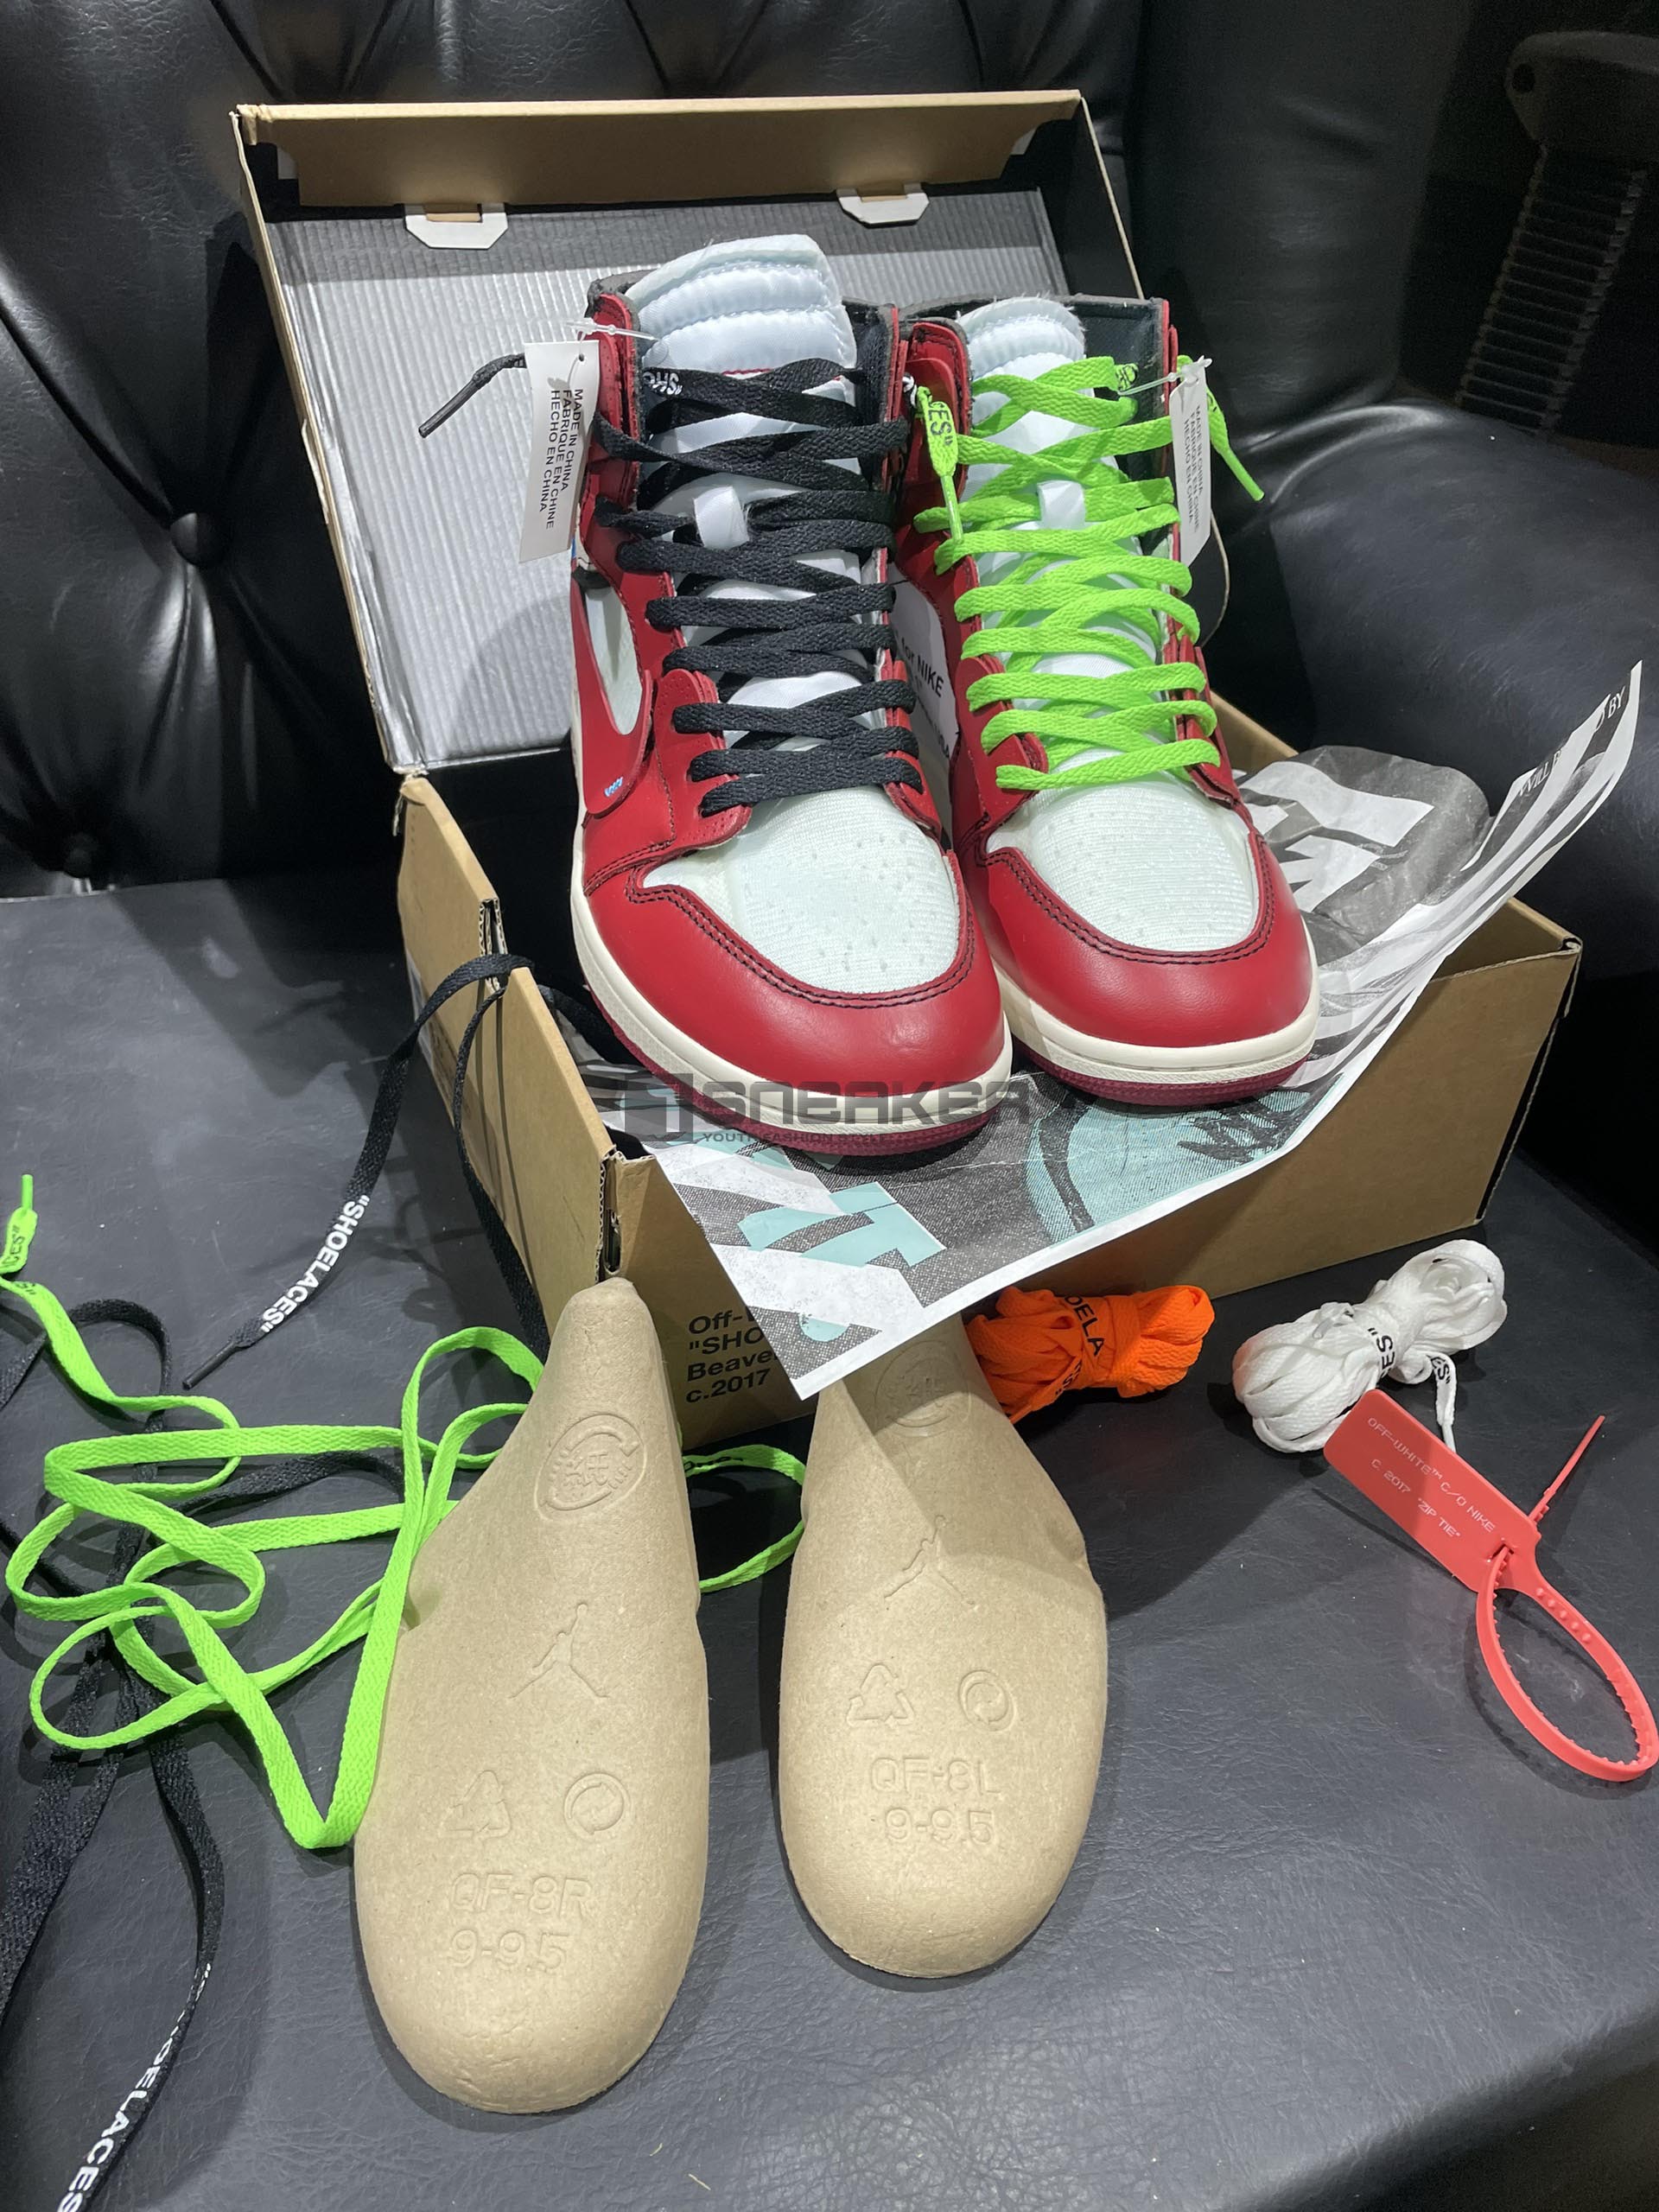 Giày Nike Air Jordan 1 Chicago Off White Pk God Factory hộp và bộ giây giày tại shop mình